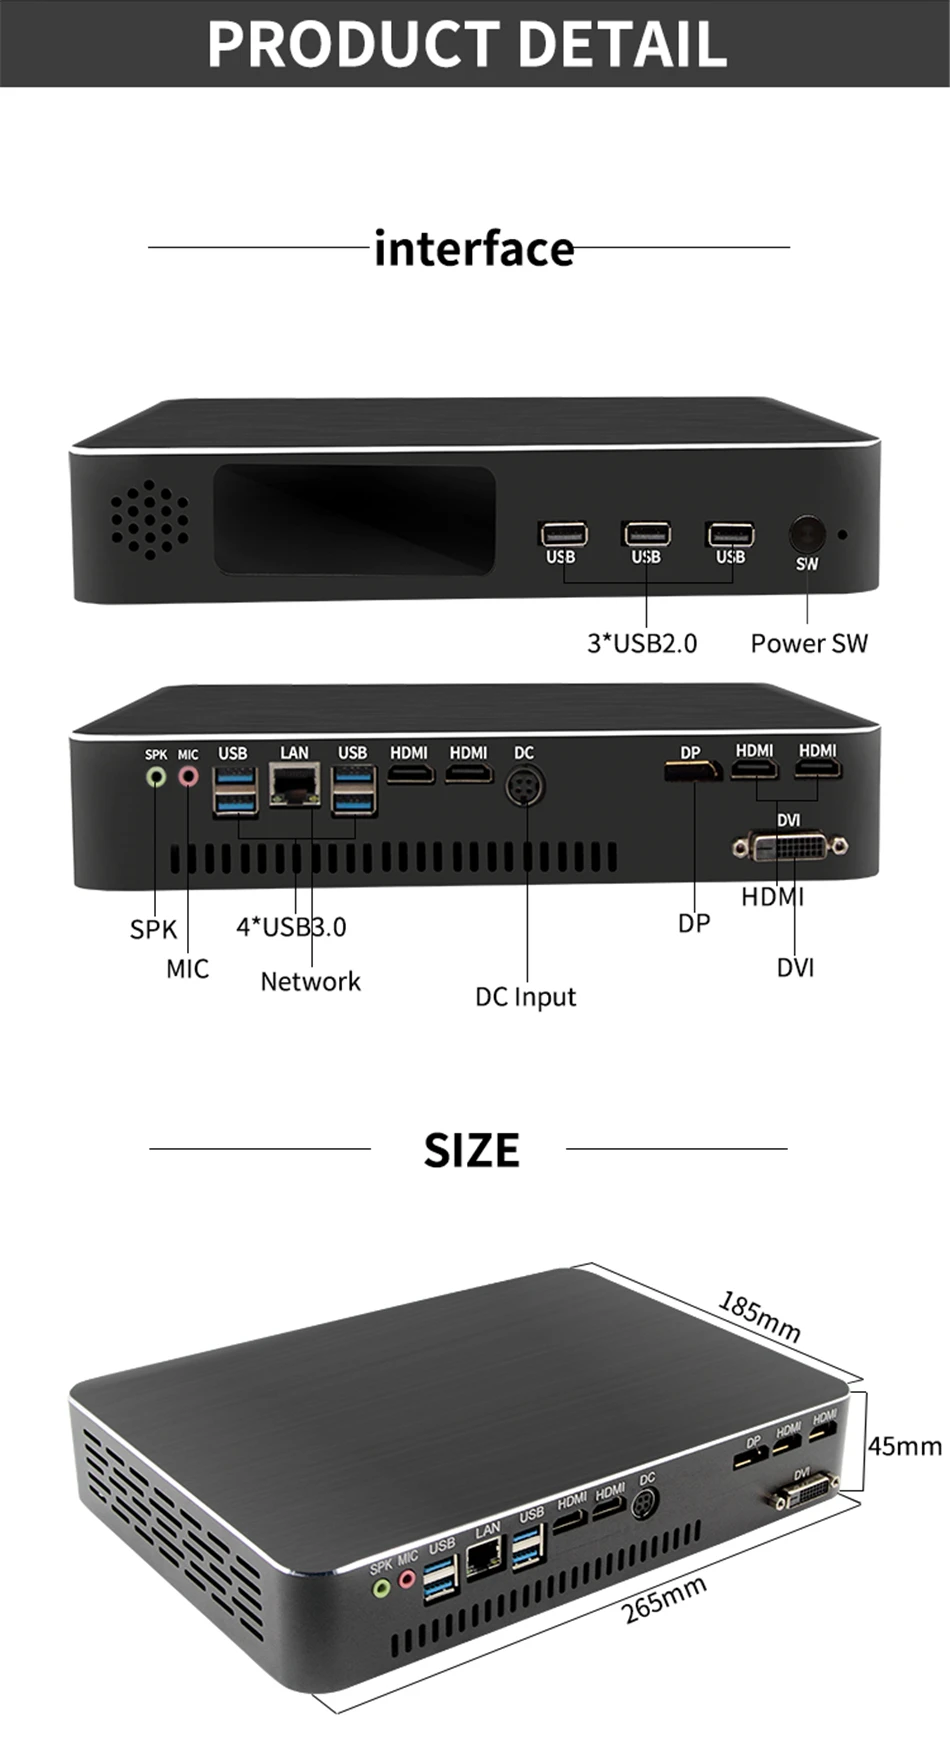 Новейший игровой ПК i5 9400F 6 ядер 6 потоков Nvidia GTX 1050TI 4 Гб мини компьютер 2* DDR4 2666 МГц 2* HDMI 2,0, 1* DP, 1* DVI WiFi